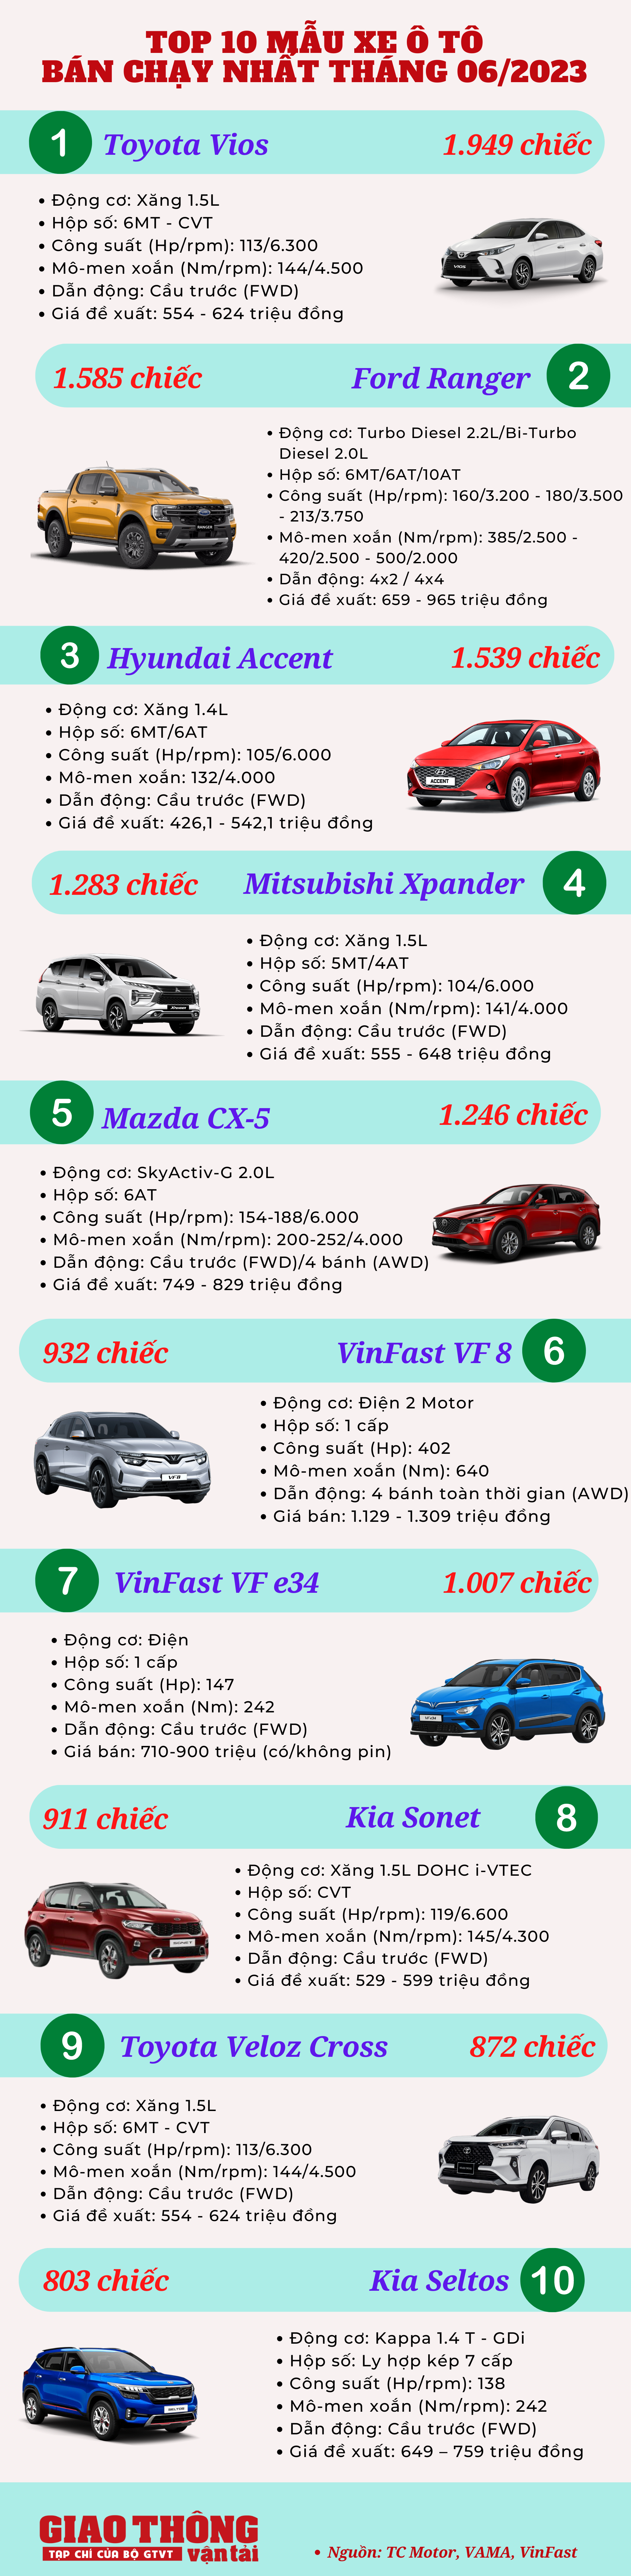 10 ô tô bán chạy tháng 6/2023: Toyota Vios tái xuất, Corolla Cross bất ngờ vắng bóng - Ảnh 2.